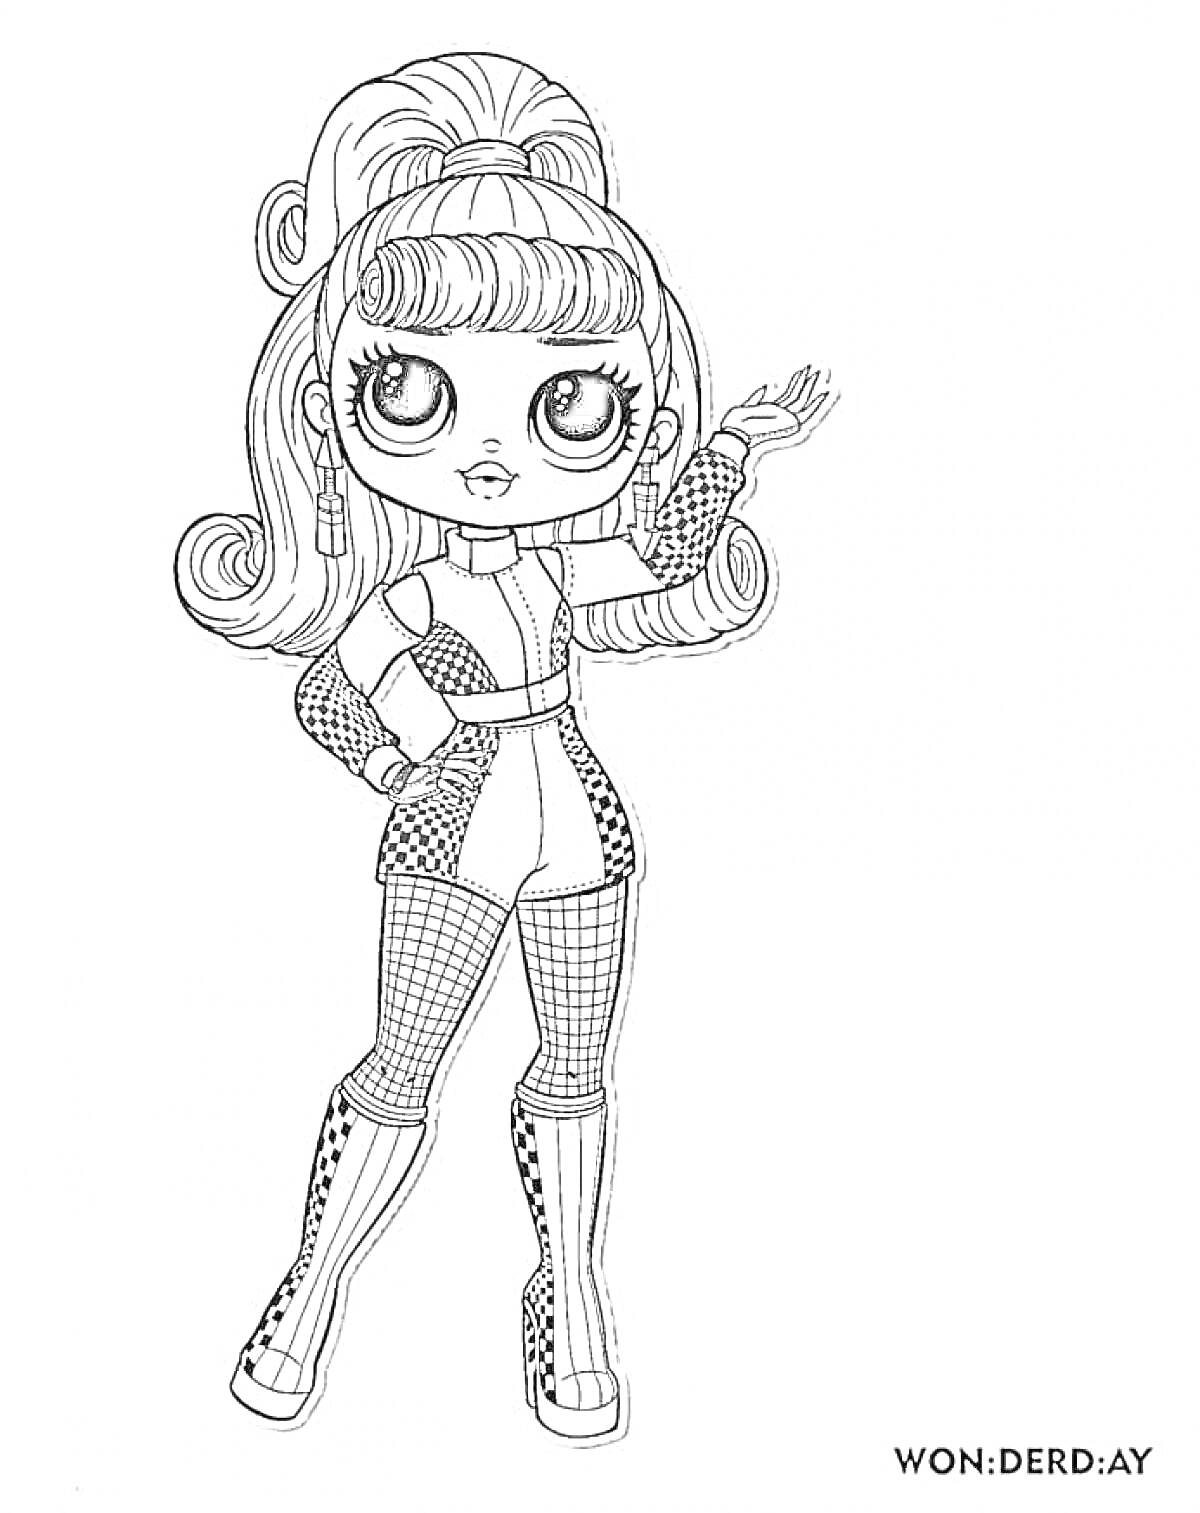 Раскраска Кукла Лол в костюме с сетчатыми рукавами и сапогами на высокой шпильке